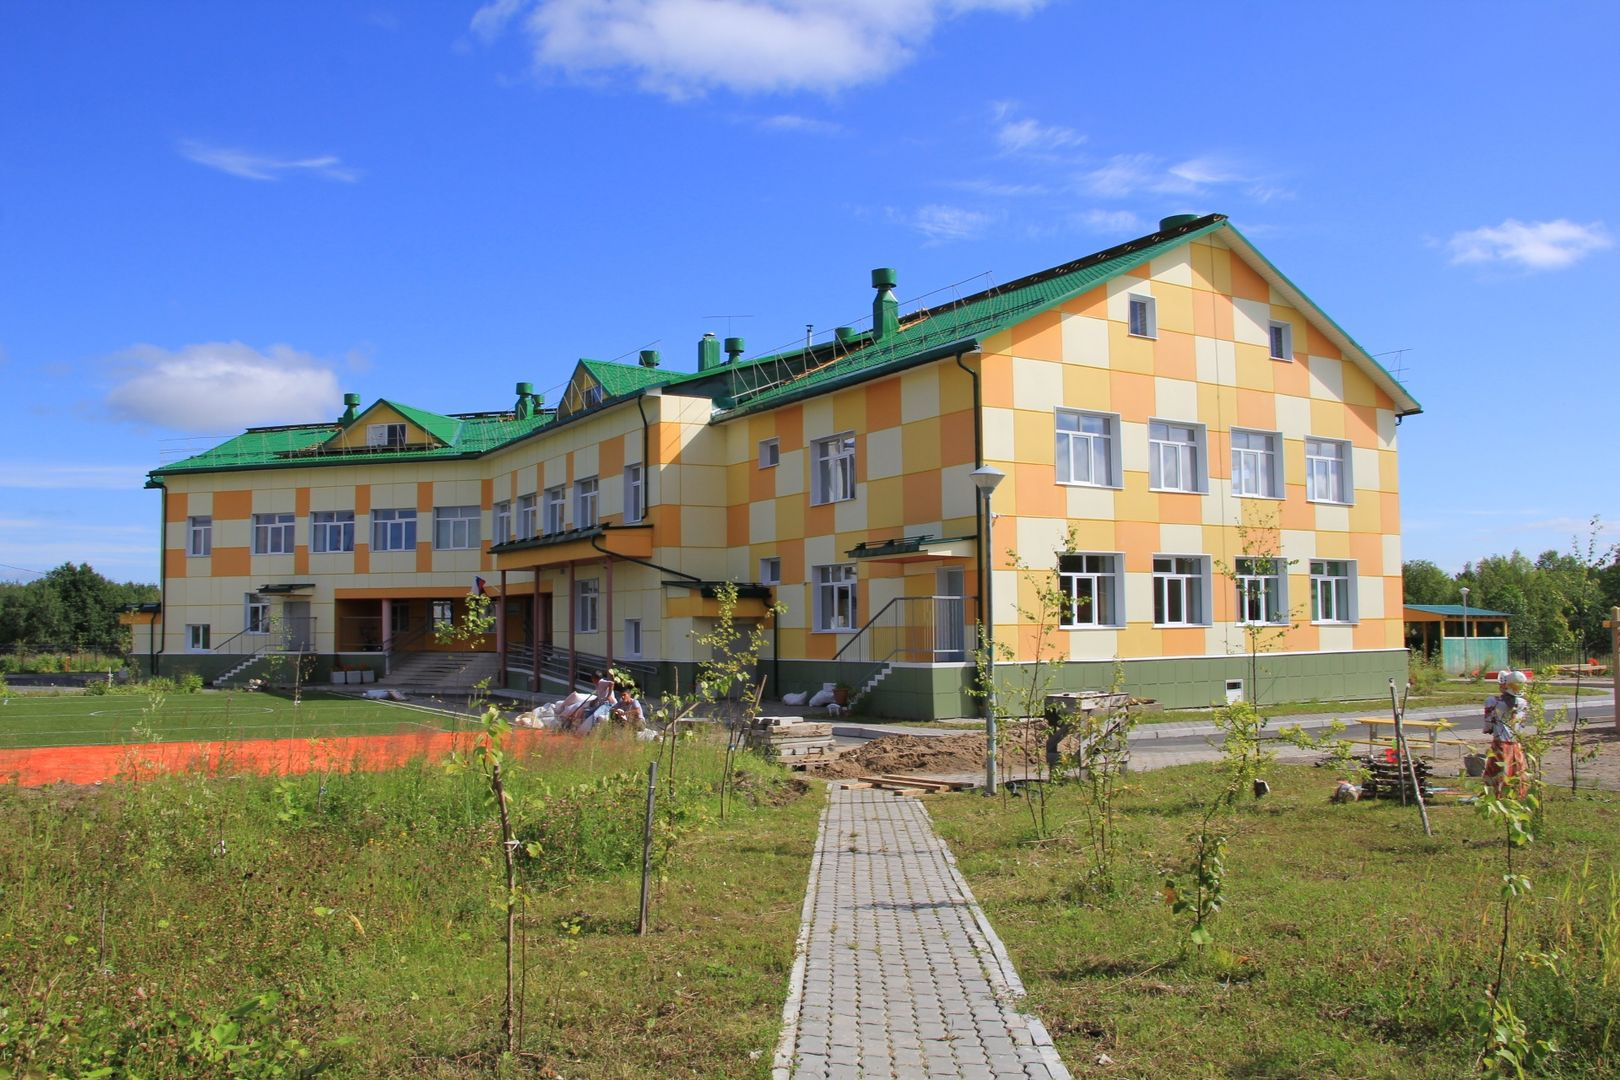 Детский сад Васьково, который местные жители ждали 20 лет